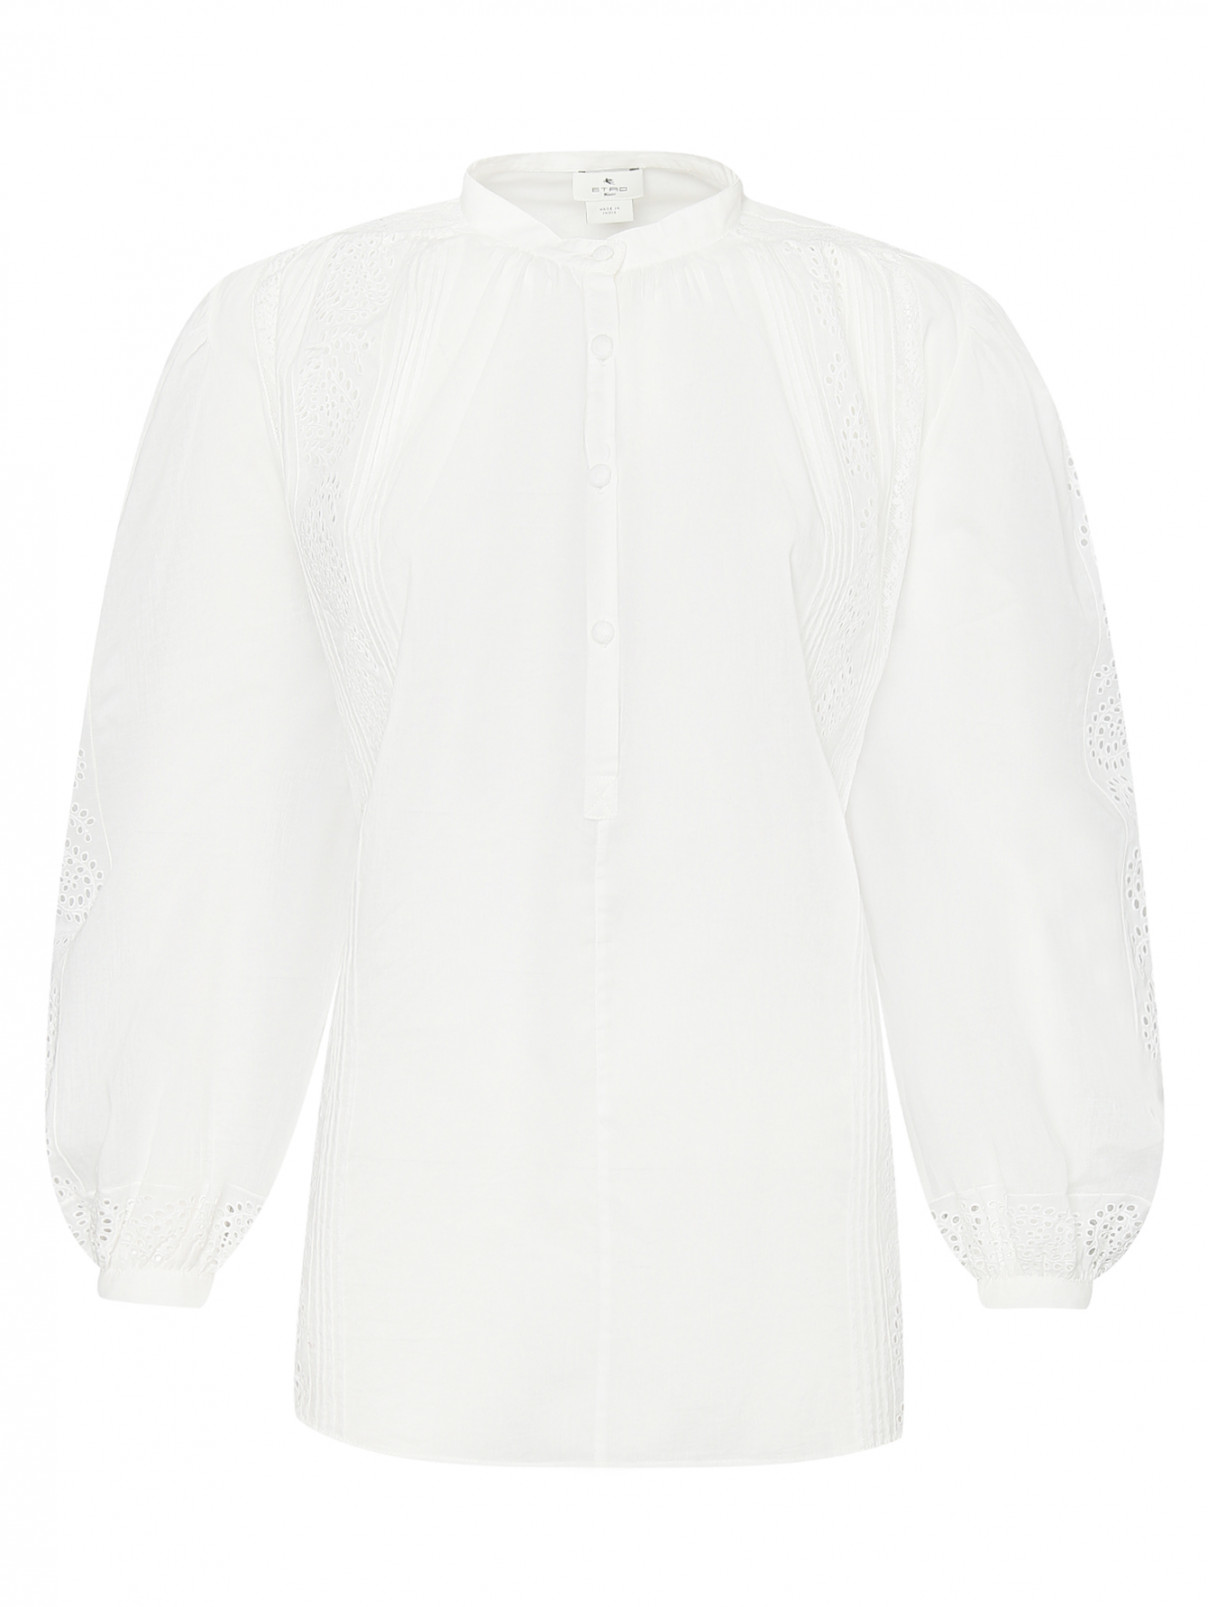 Блуза из хлопка с объемными рукавами Etro  –  Общий вид  – Цвет:  Белый